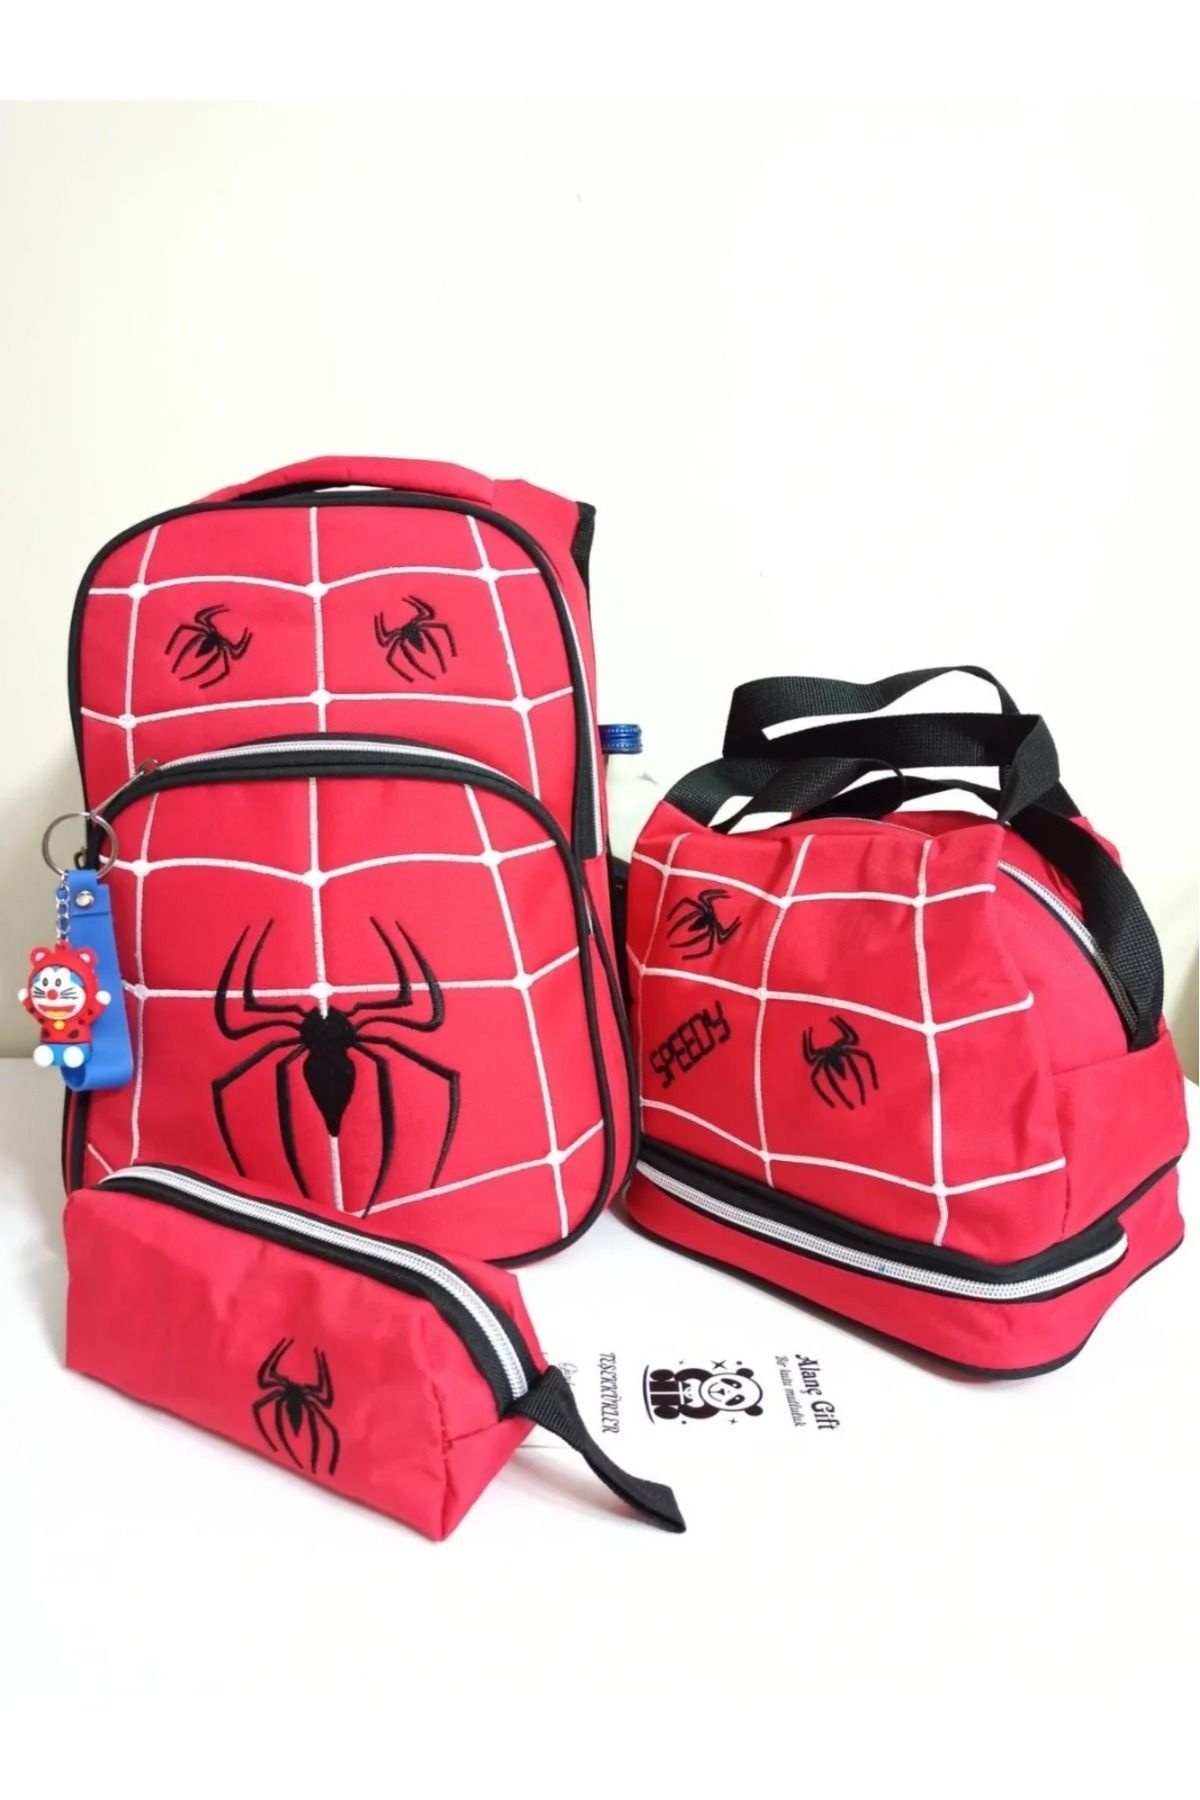 Alanç Gift Örümcek Desenli Kırmızı Ortopedik Erkek Çocuk ilkokul Çantası Termal Beslenme Ve Kalemlikli Set